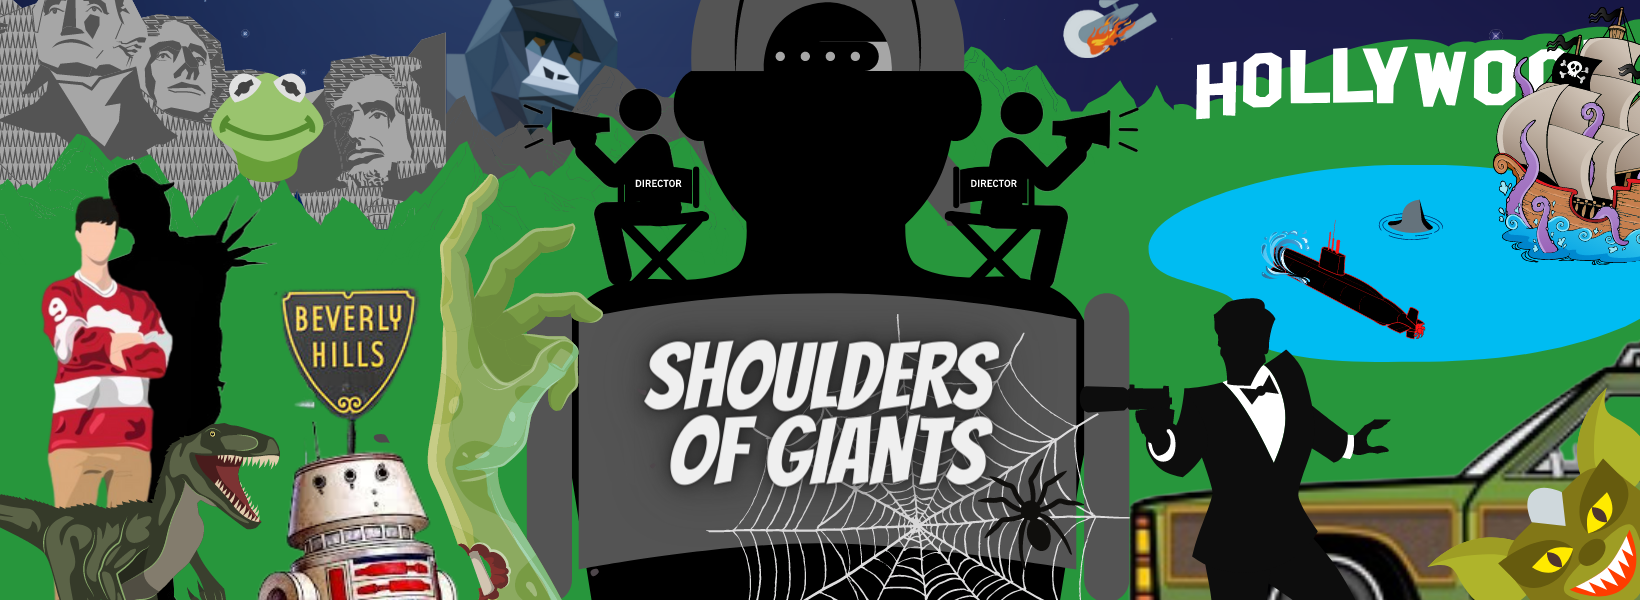 Shoulders of Giants